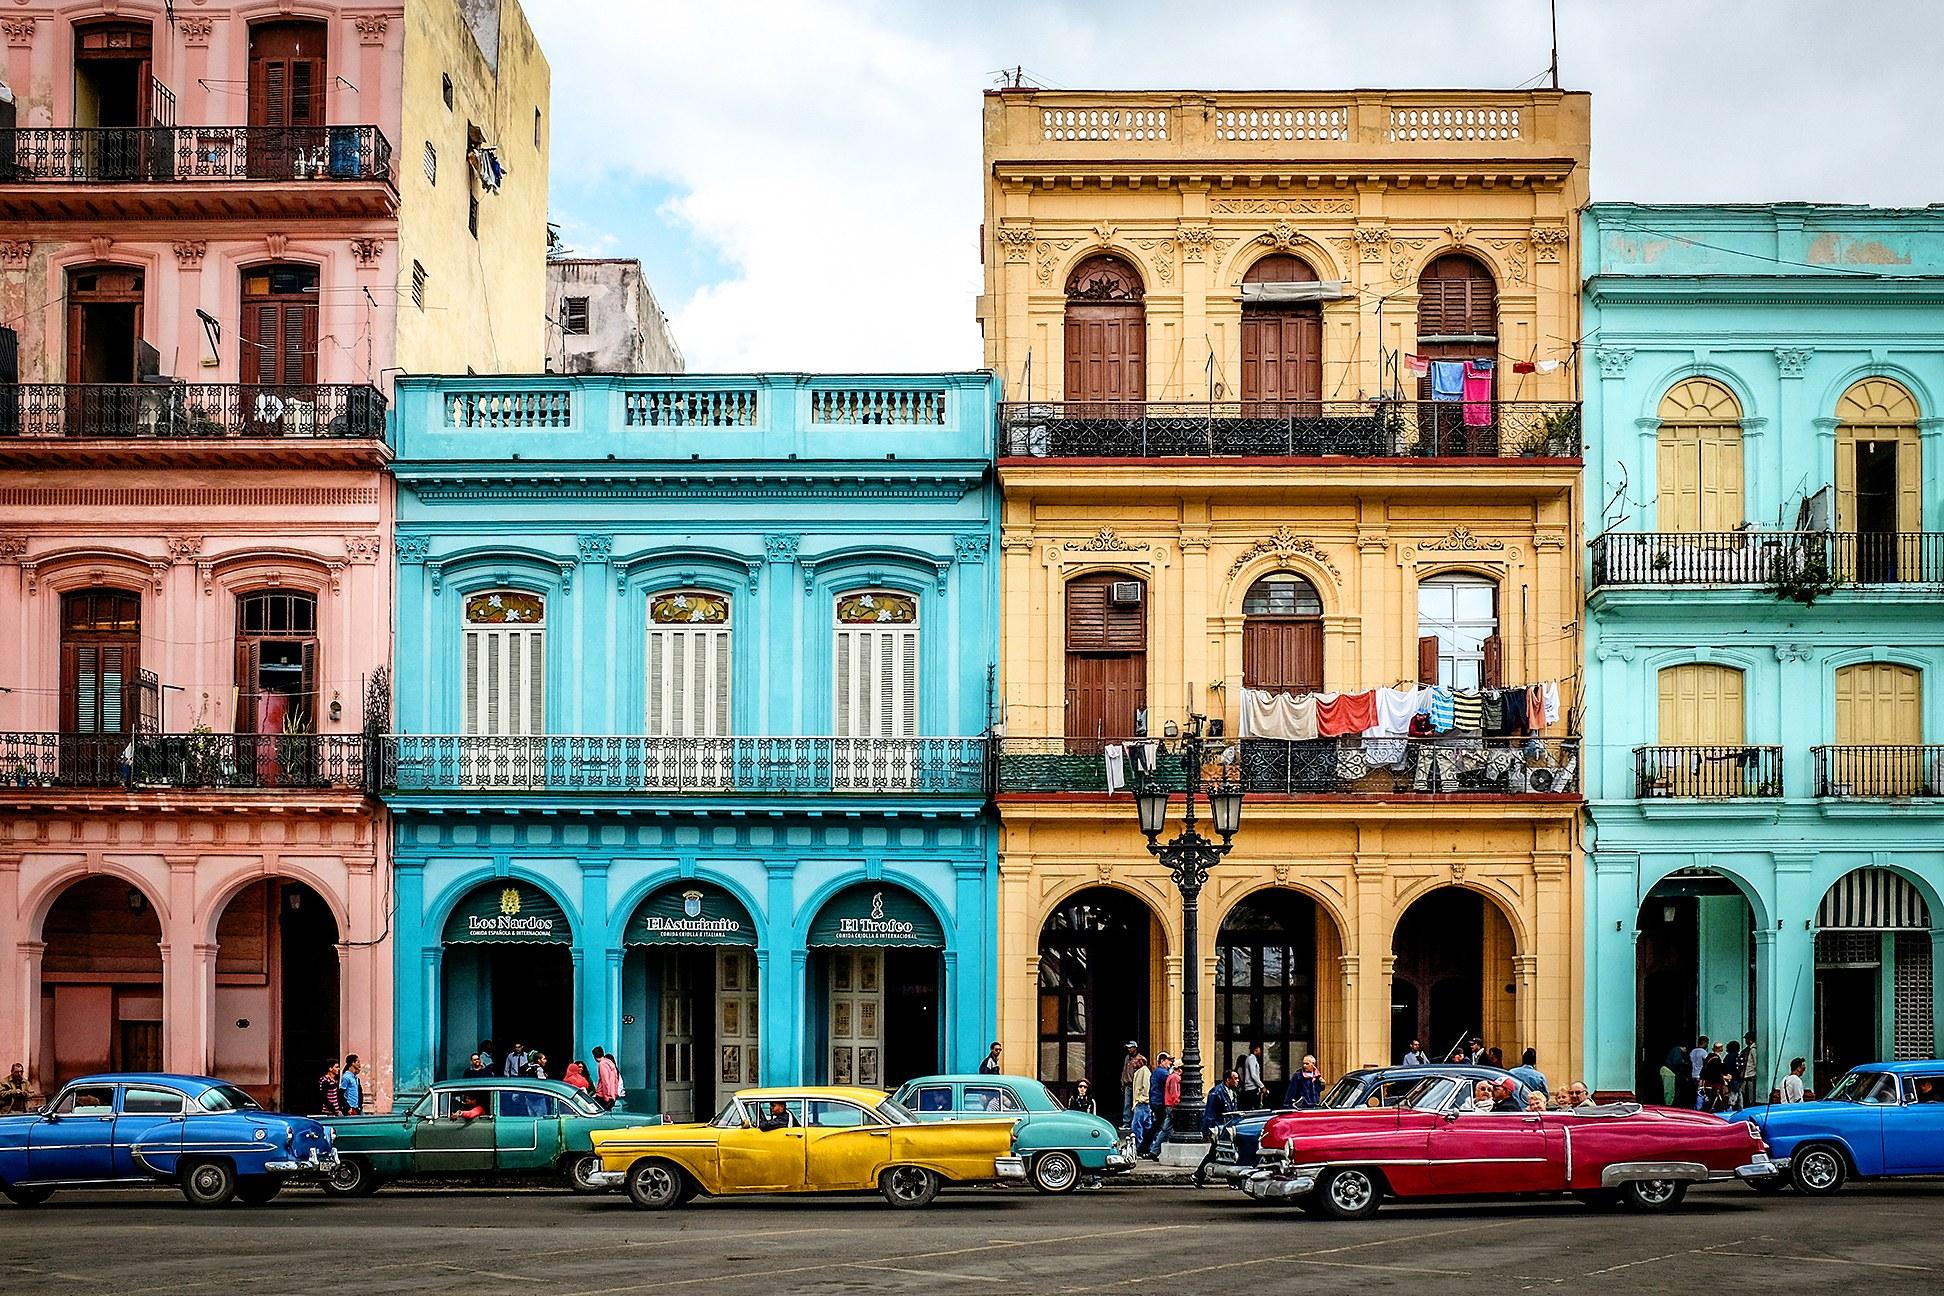 Kuba, domovina Če Gevare, duhana, ruma: Egzotična zemlja vječnog sunca!